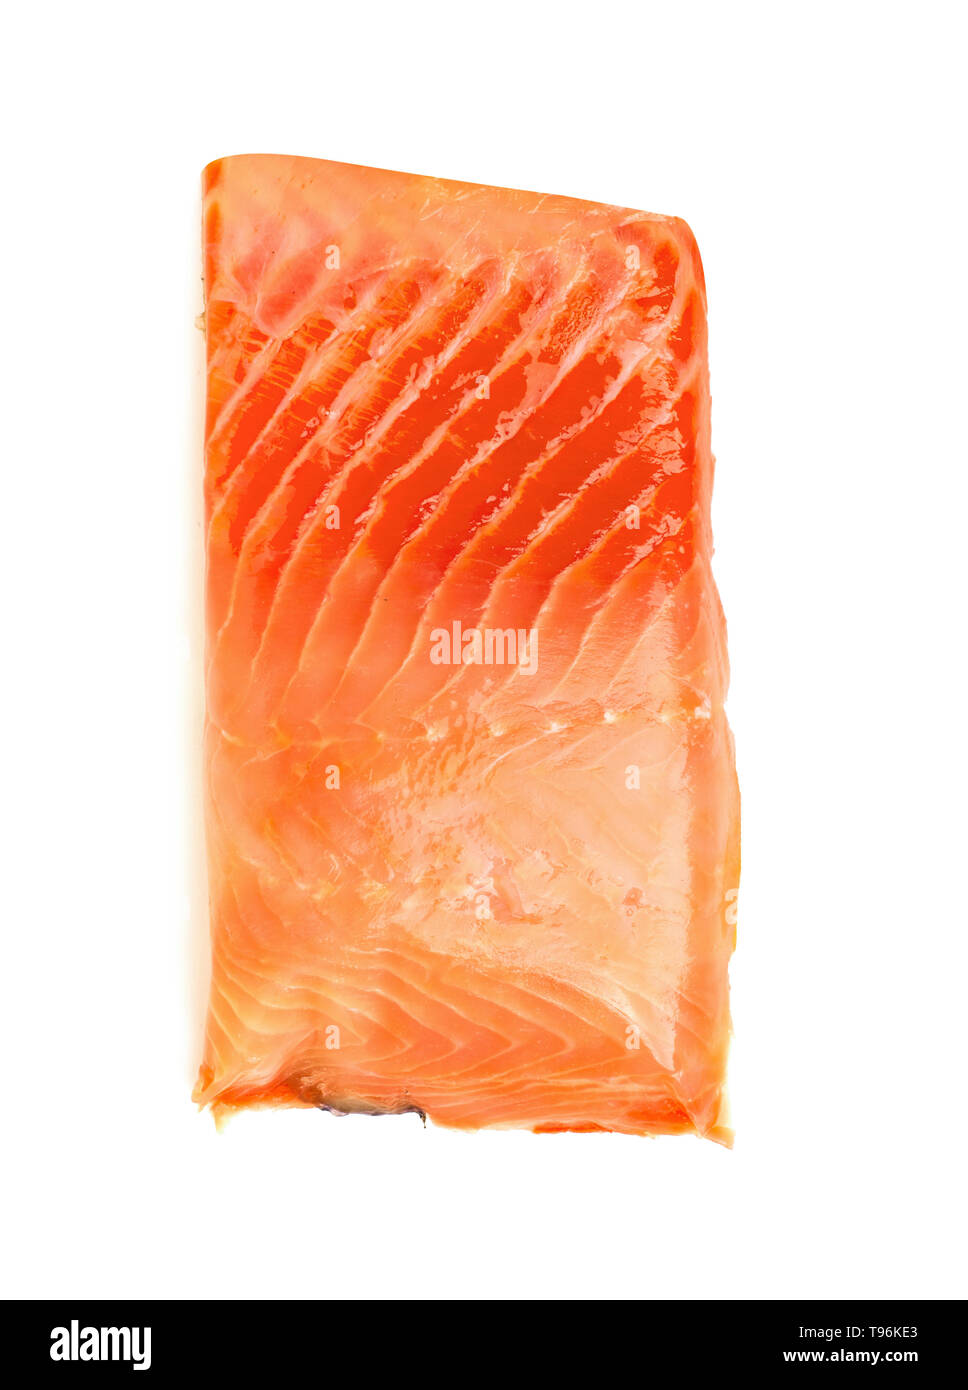 Soluzione salina di salmone pesce rosso steak isolato su uno sfondo bianco Foto Stock